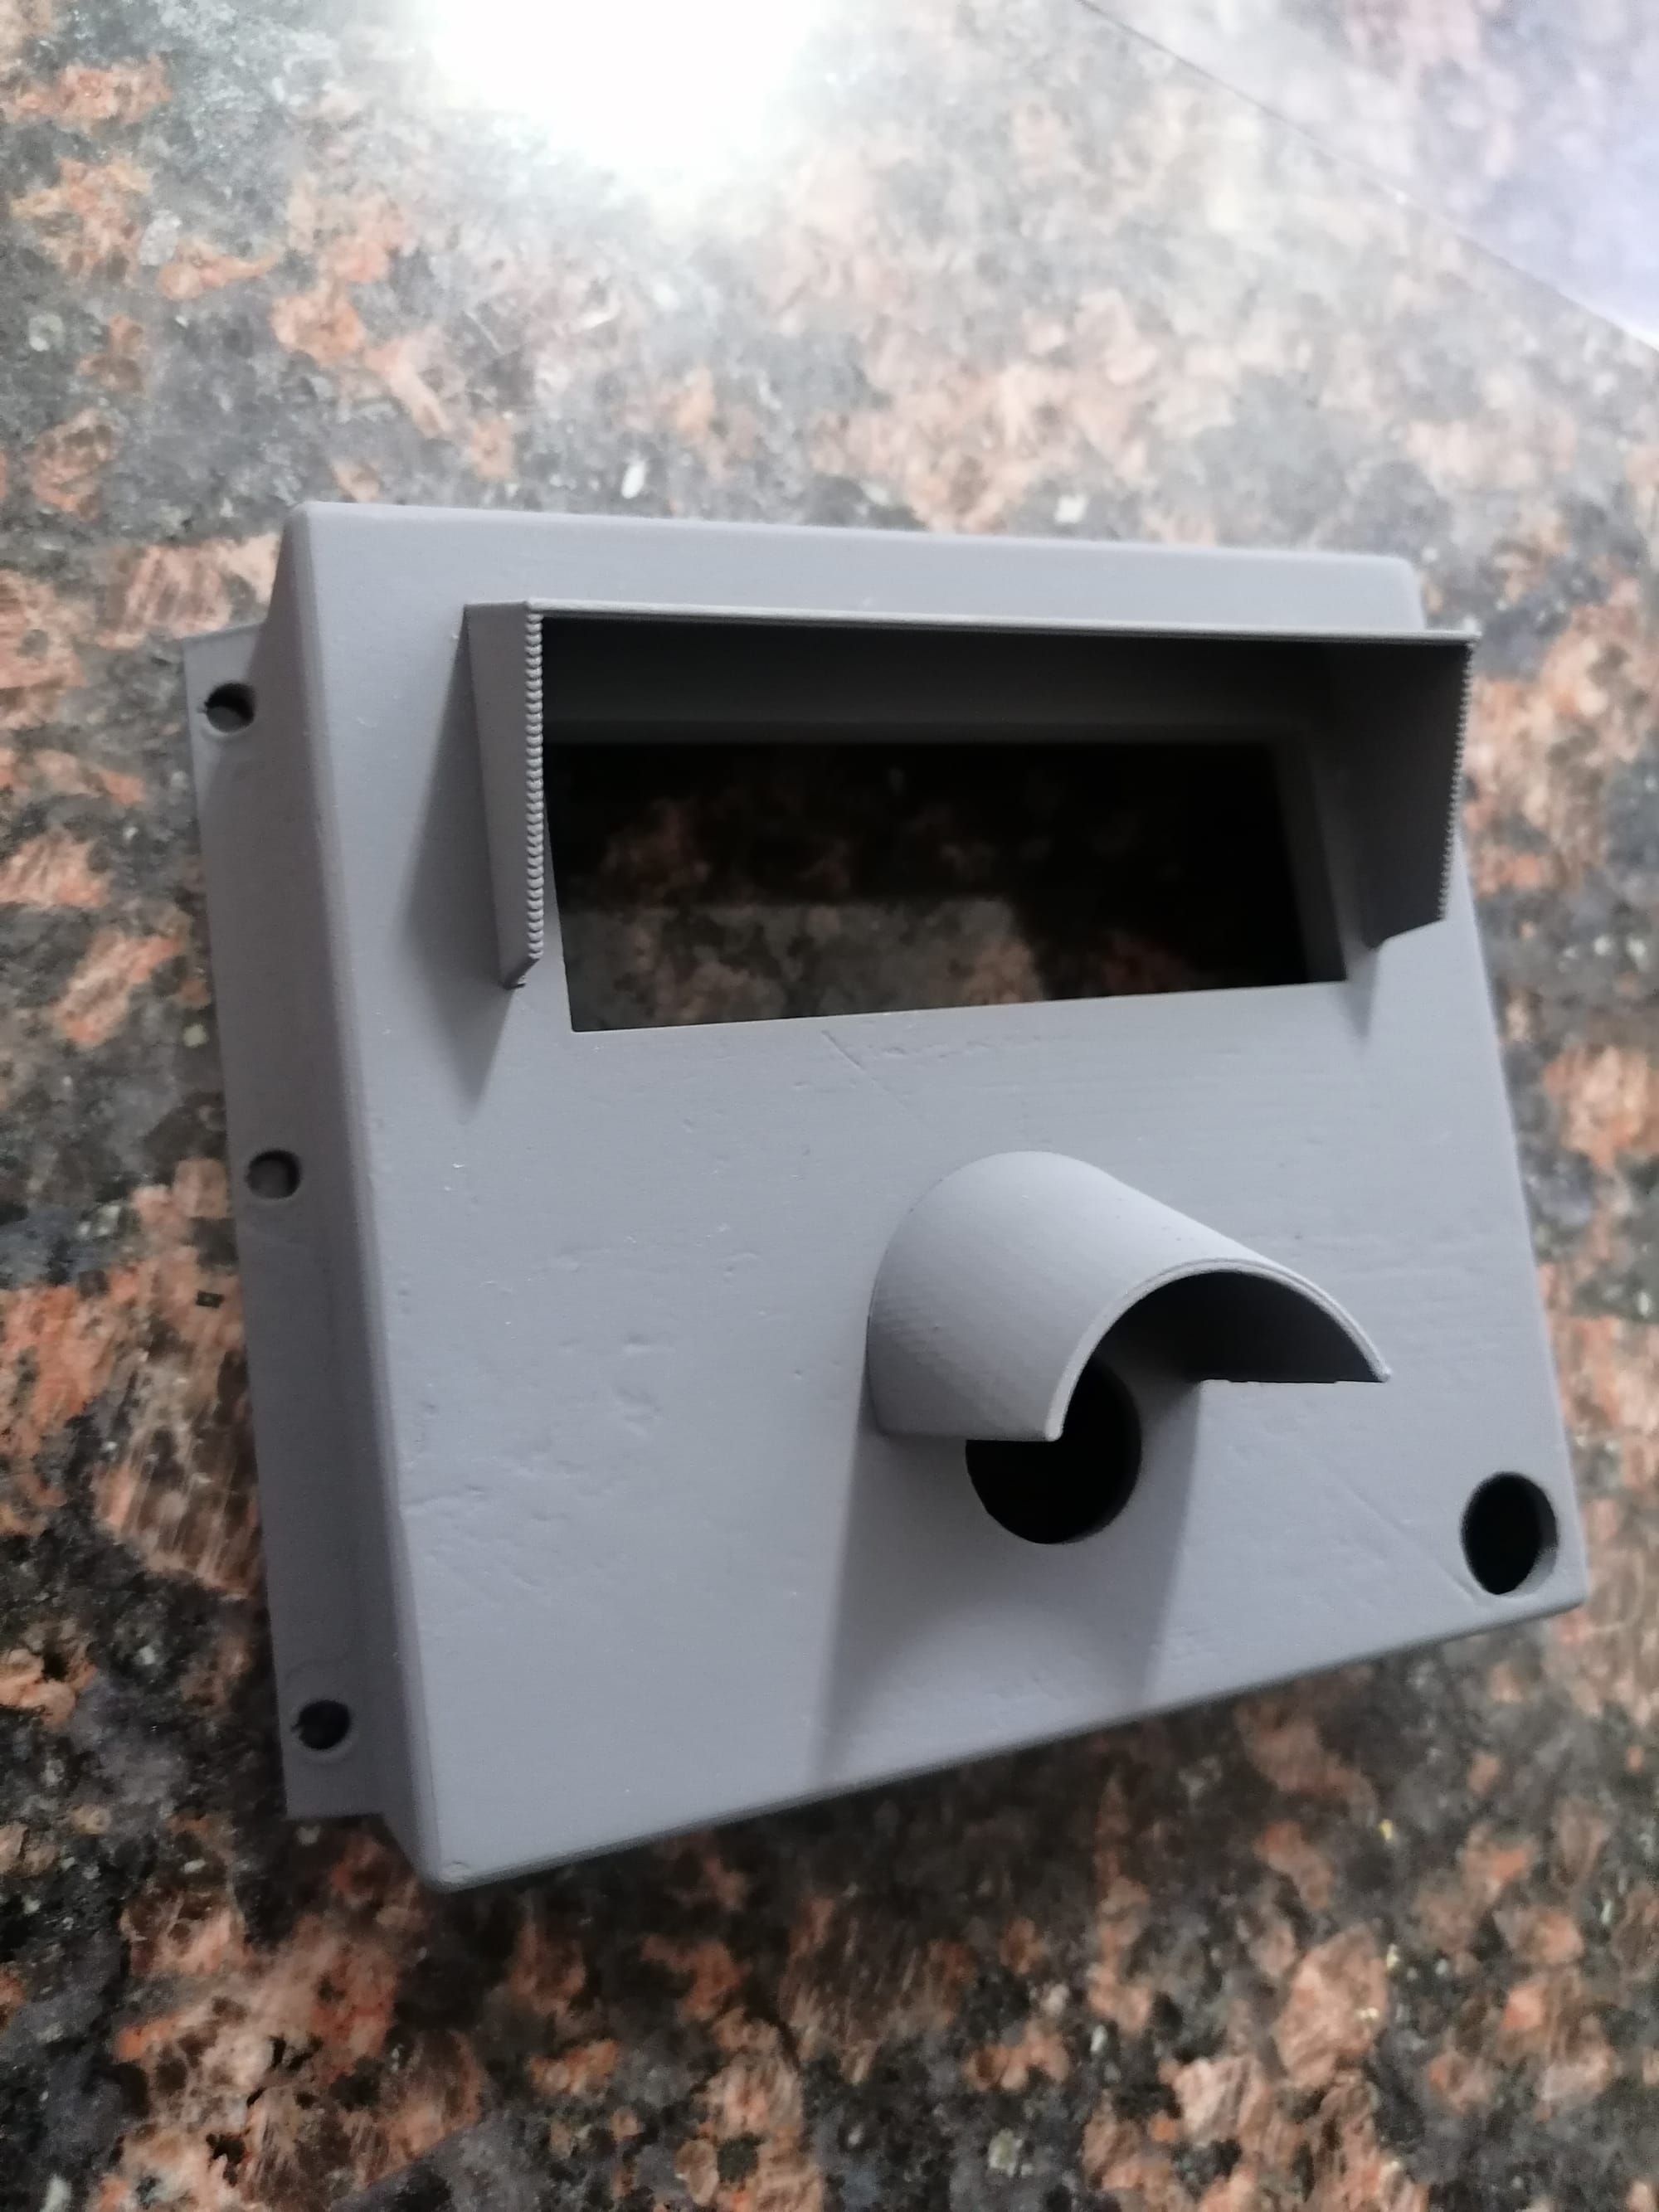 DIY Smart Doorbell with LCD